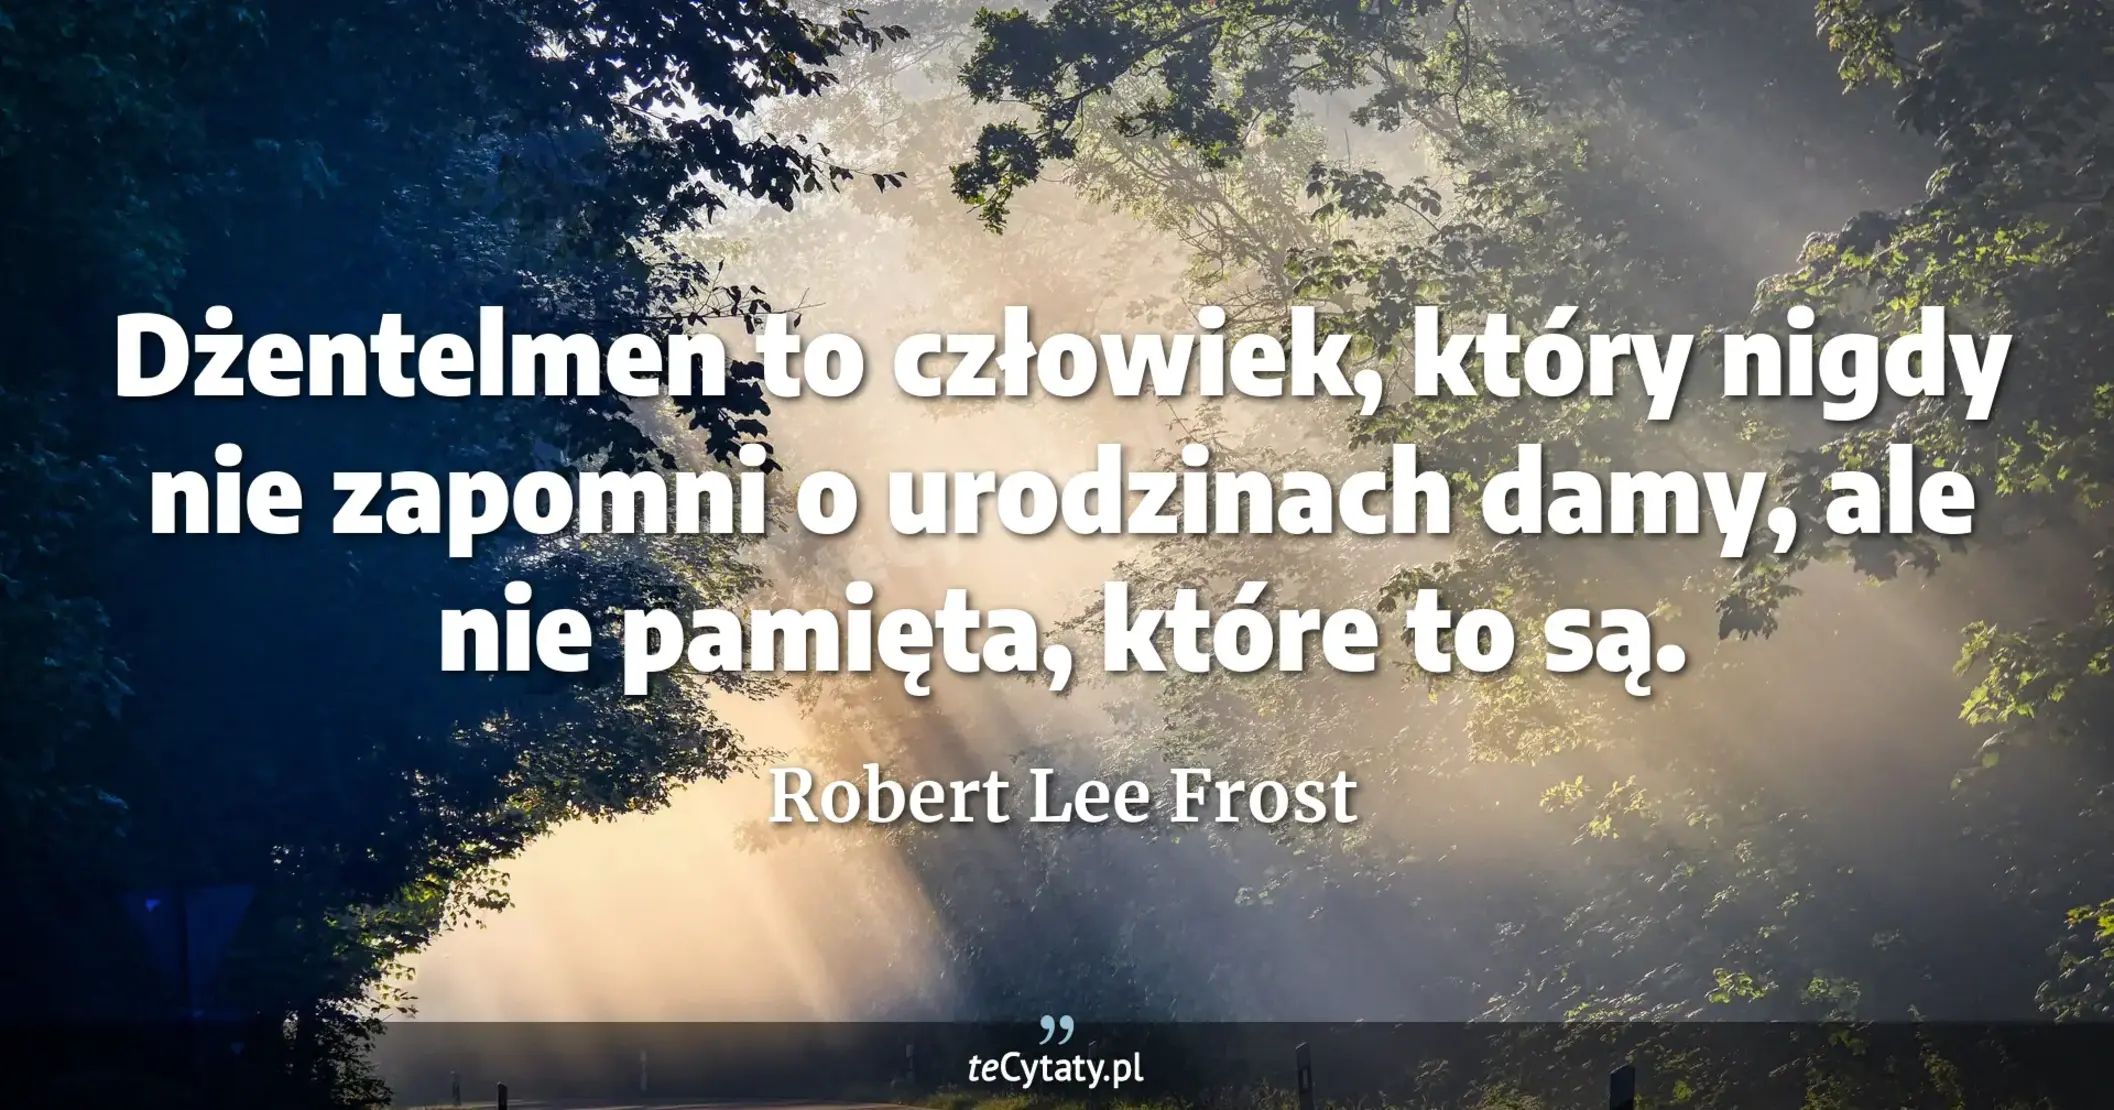 Dżentelmen to człowiek, który nigdy nie zapomni o urodzinach damy, ale nie pamięta, które to są. - Robert Lee Frost